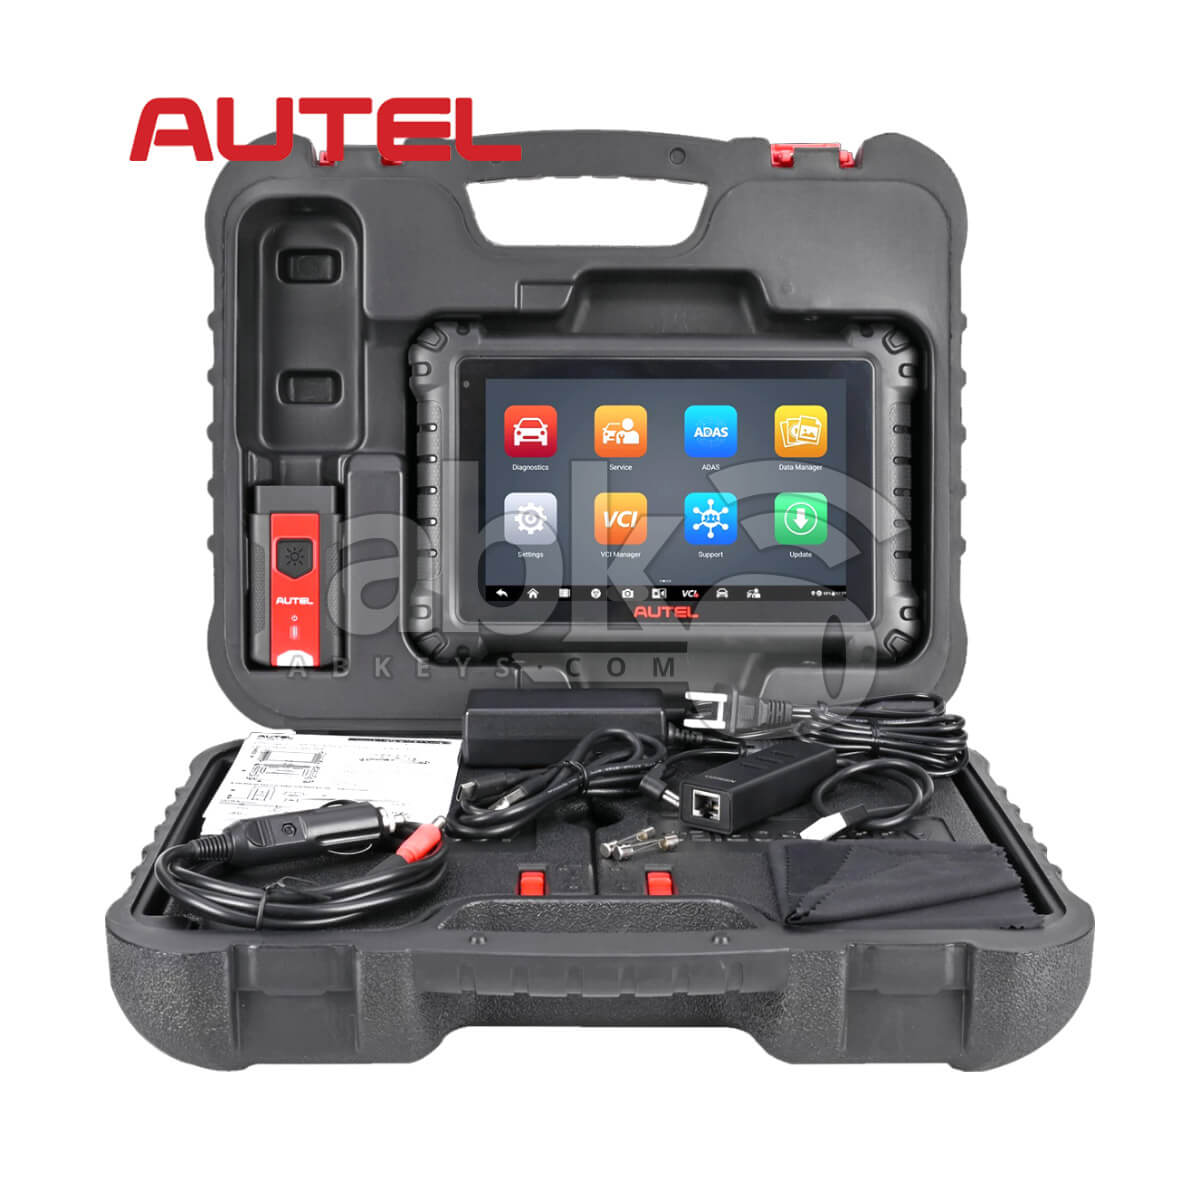 AUTEL MaxiSys MS906 Pro Auto Diagnostic Tools User Guide